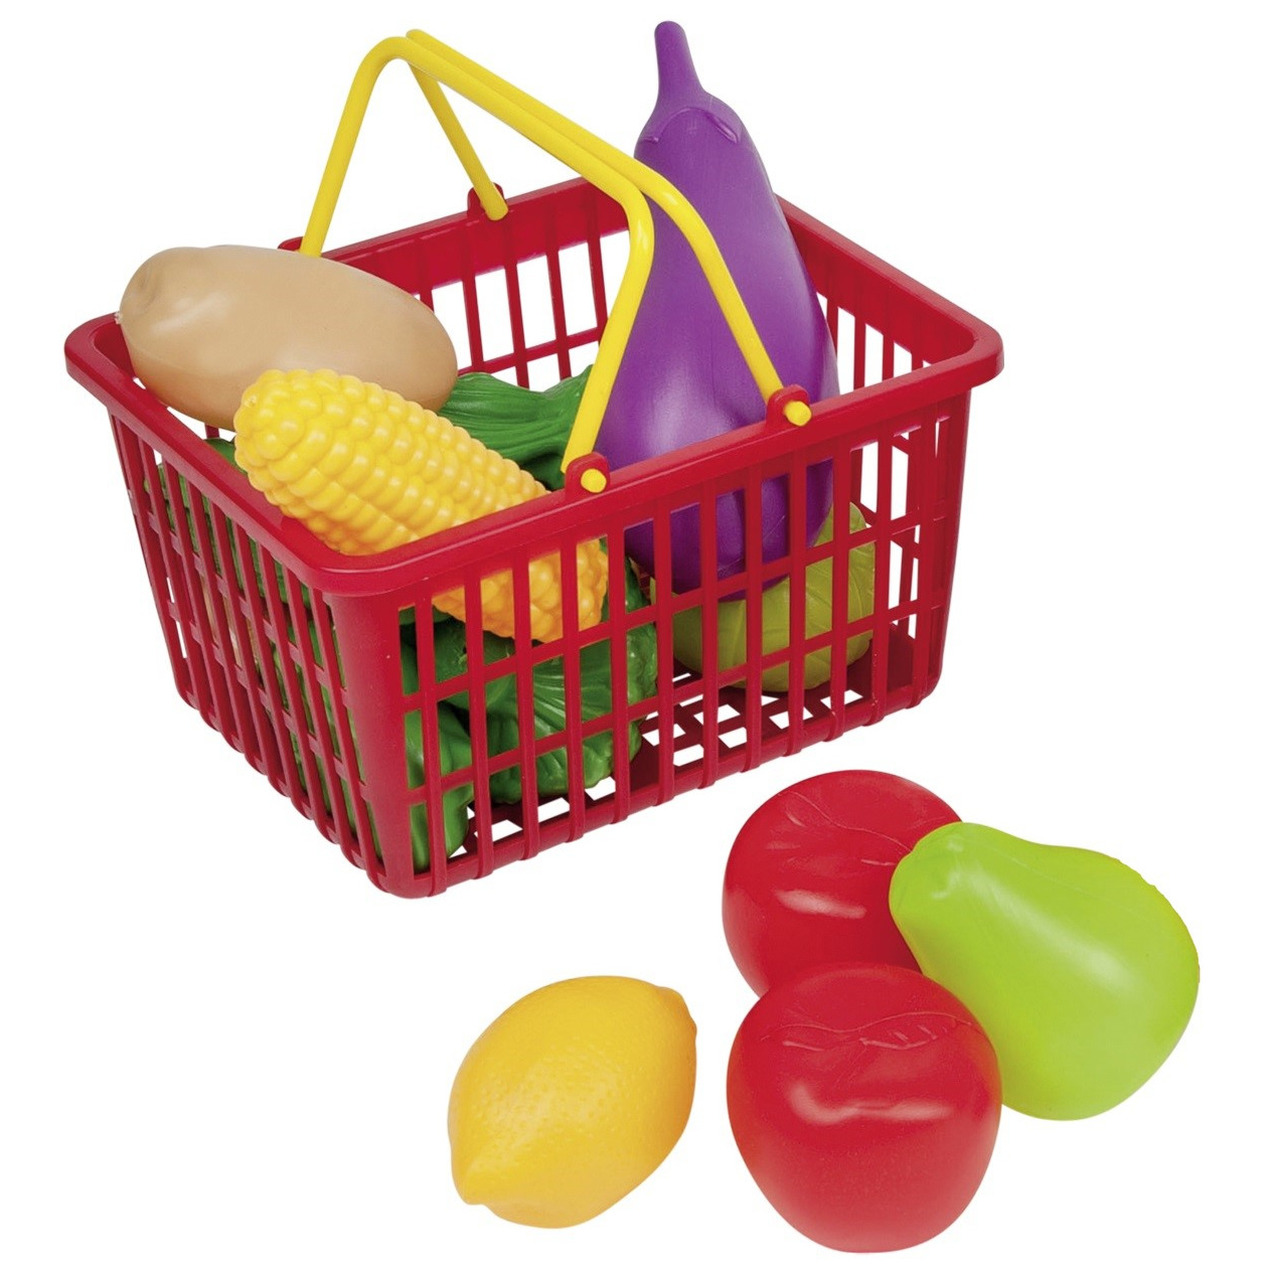 Rood speelgoed boodschappen/winkelmandje met groente en fruit 11-delig